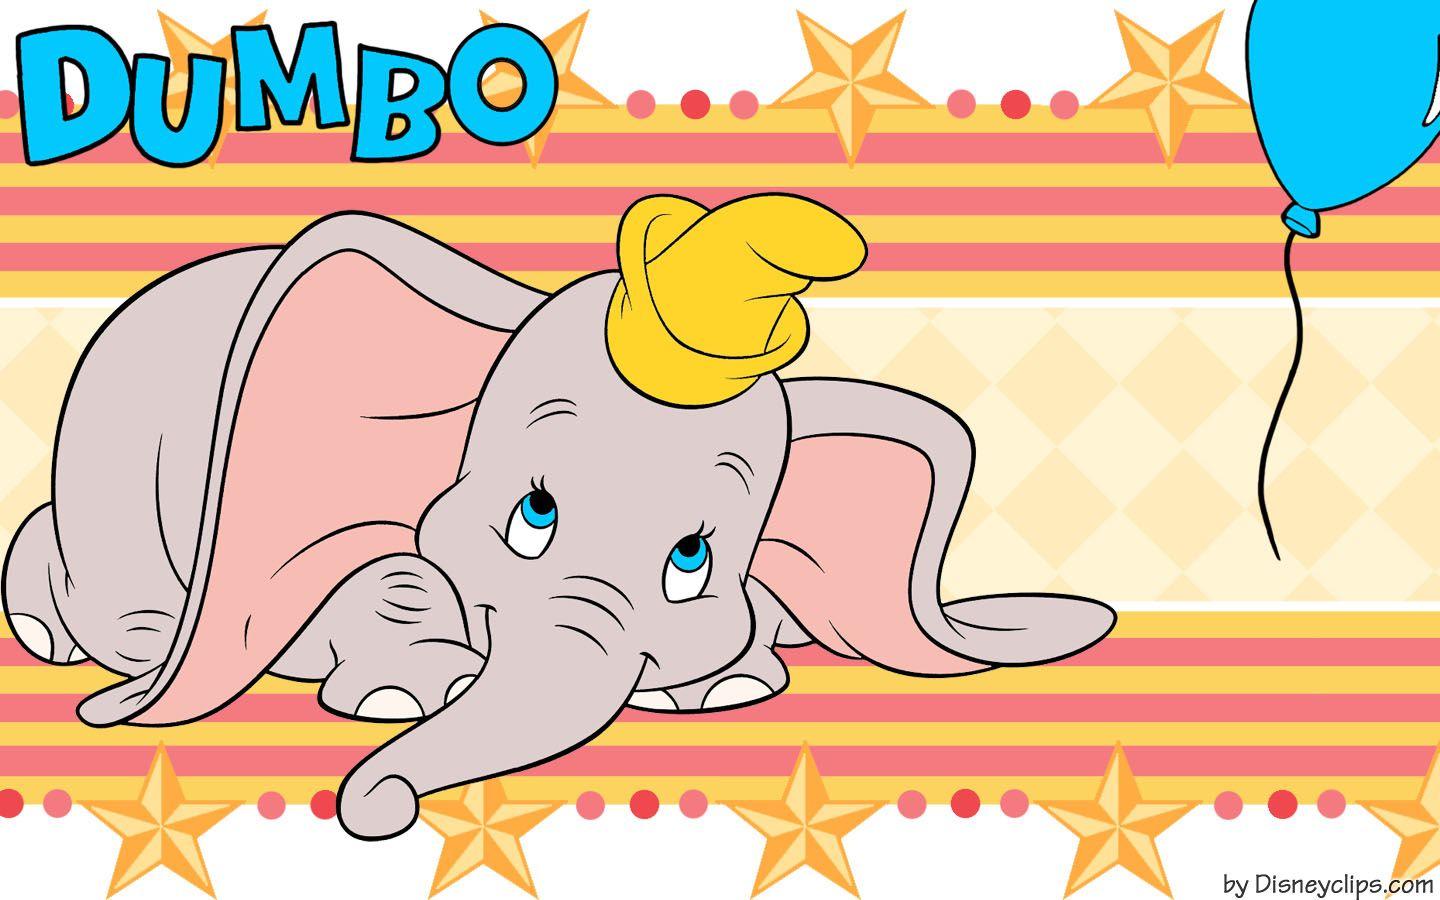 Dumbo Wallpaper. Disney's World of Wonders